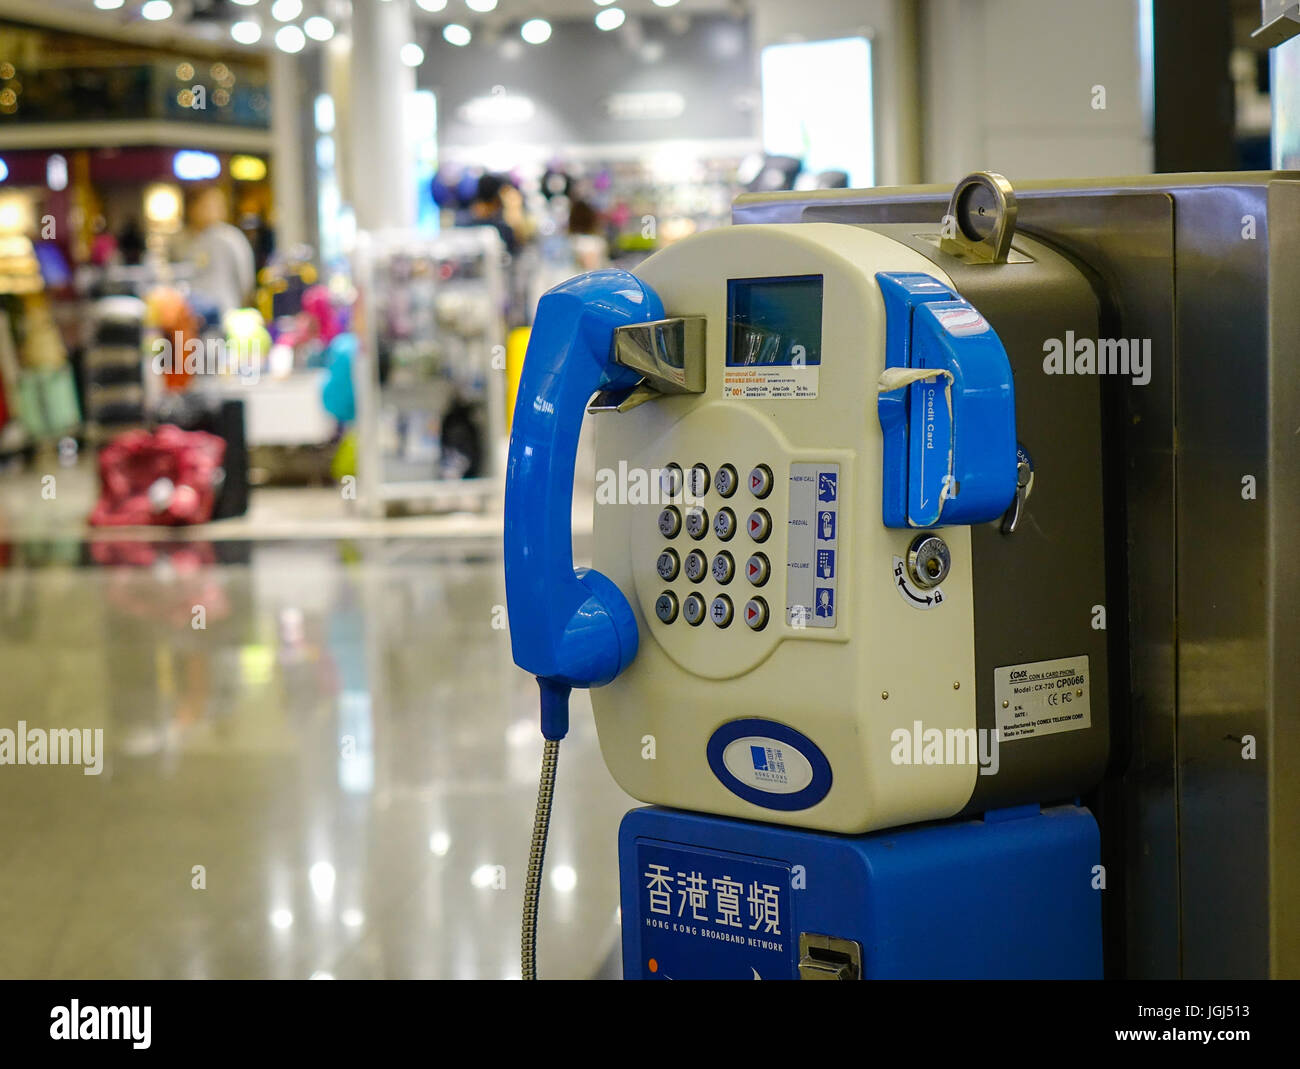 HONG KONG, CHINA - APR 1, 2017. Public fixed telephone booth at the airport in Hong Kong, China. The Hong Kong airport handles more than 70m passenger Stock Photo